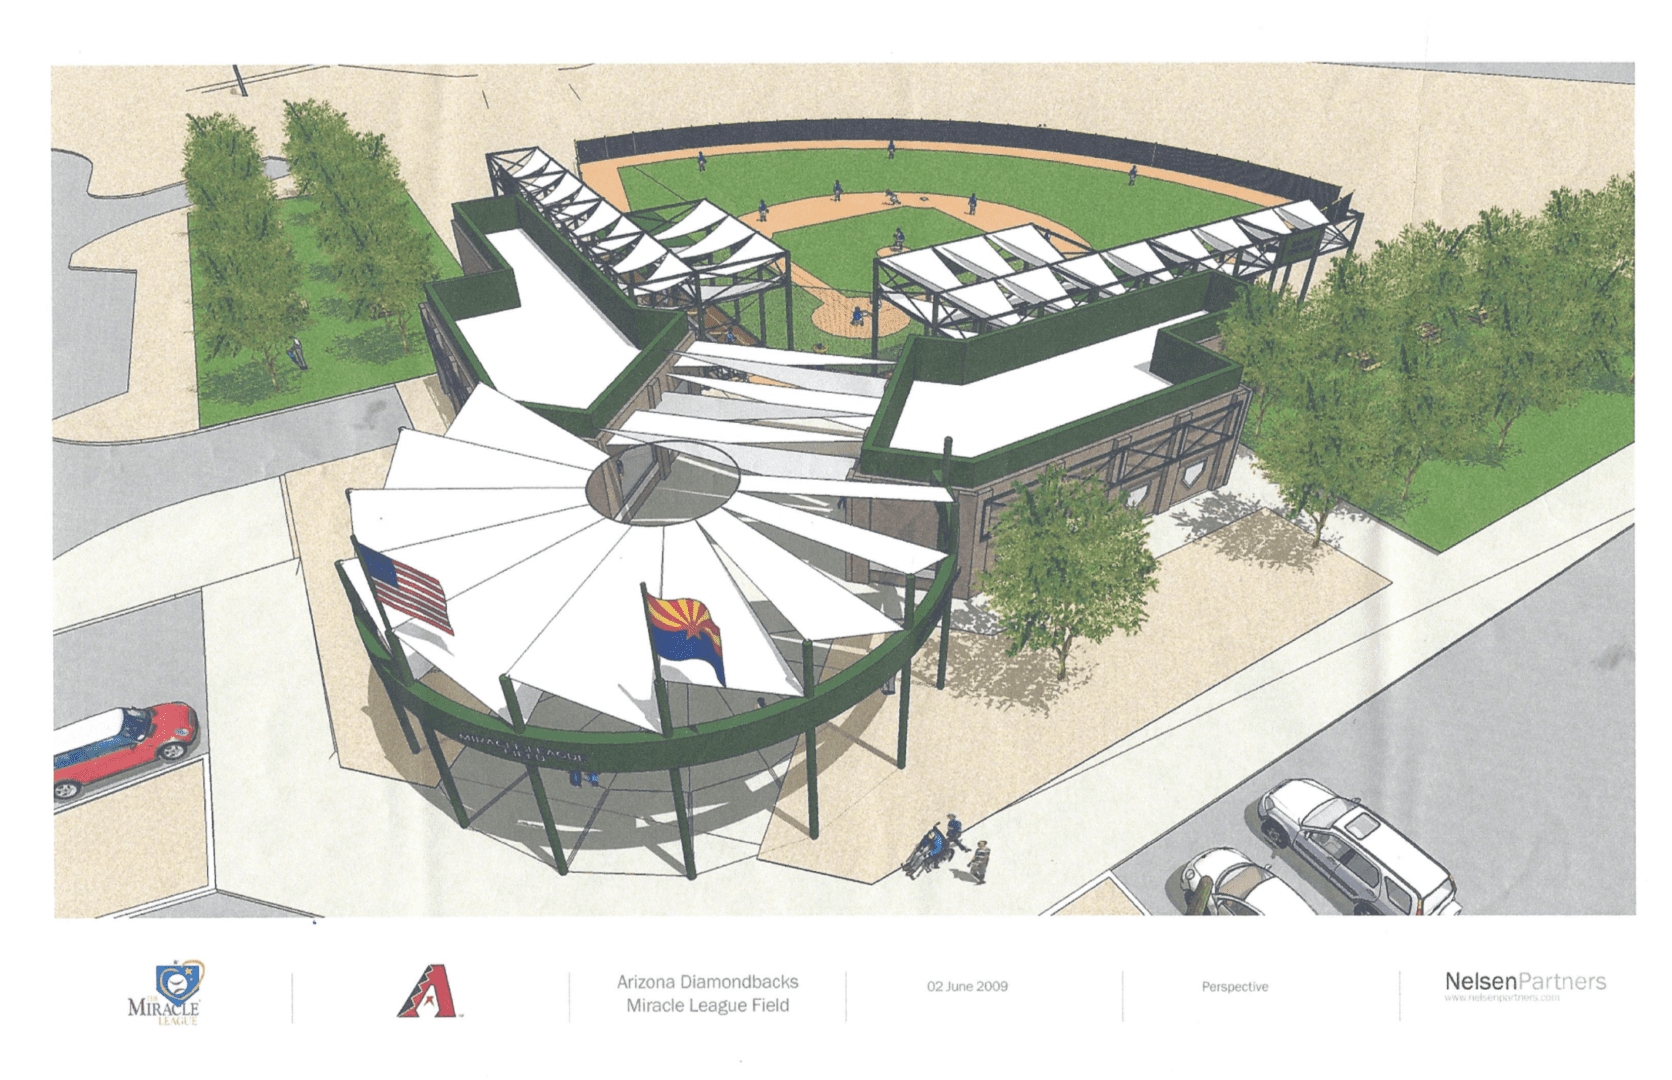 An artist's rendering of a baseball stadium.